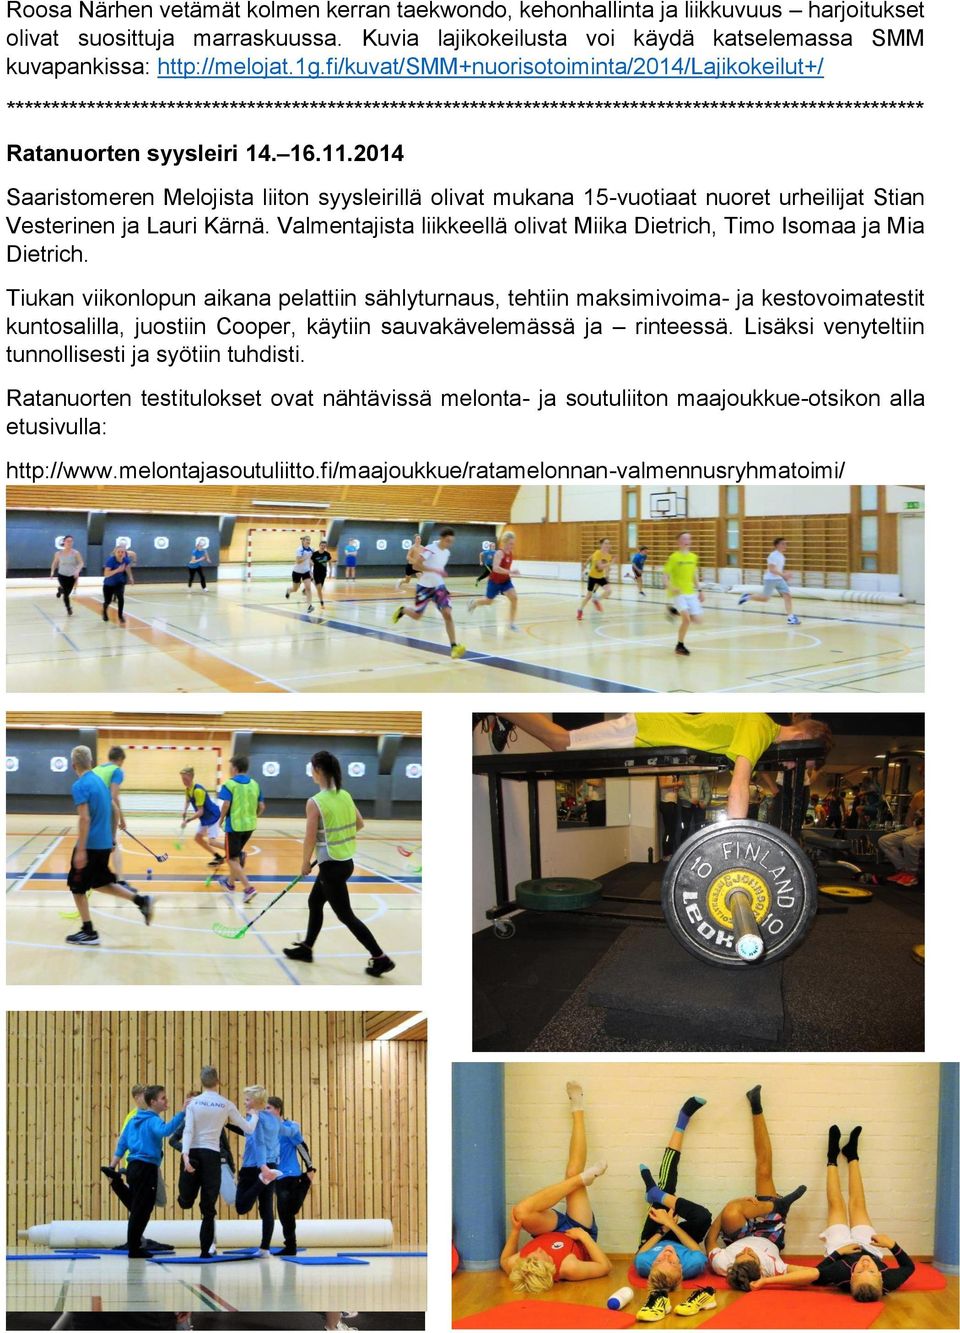 2014 Saaristomeren Melojista liiton syysleirillä olivat mukana 15-vuotiaat nuoret urheilijat Stian Vesterinen ja Lauri Kärnä.